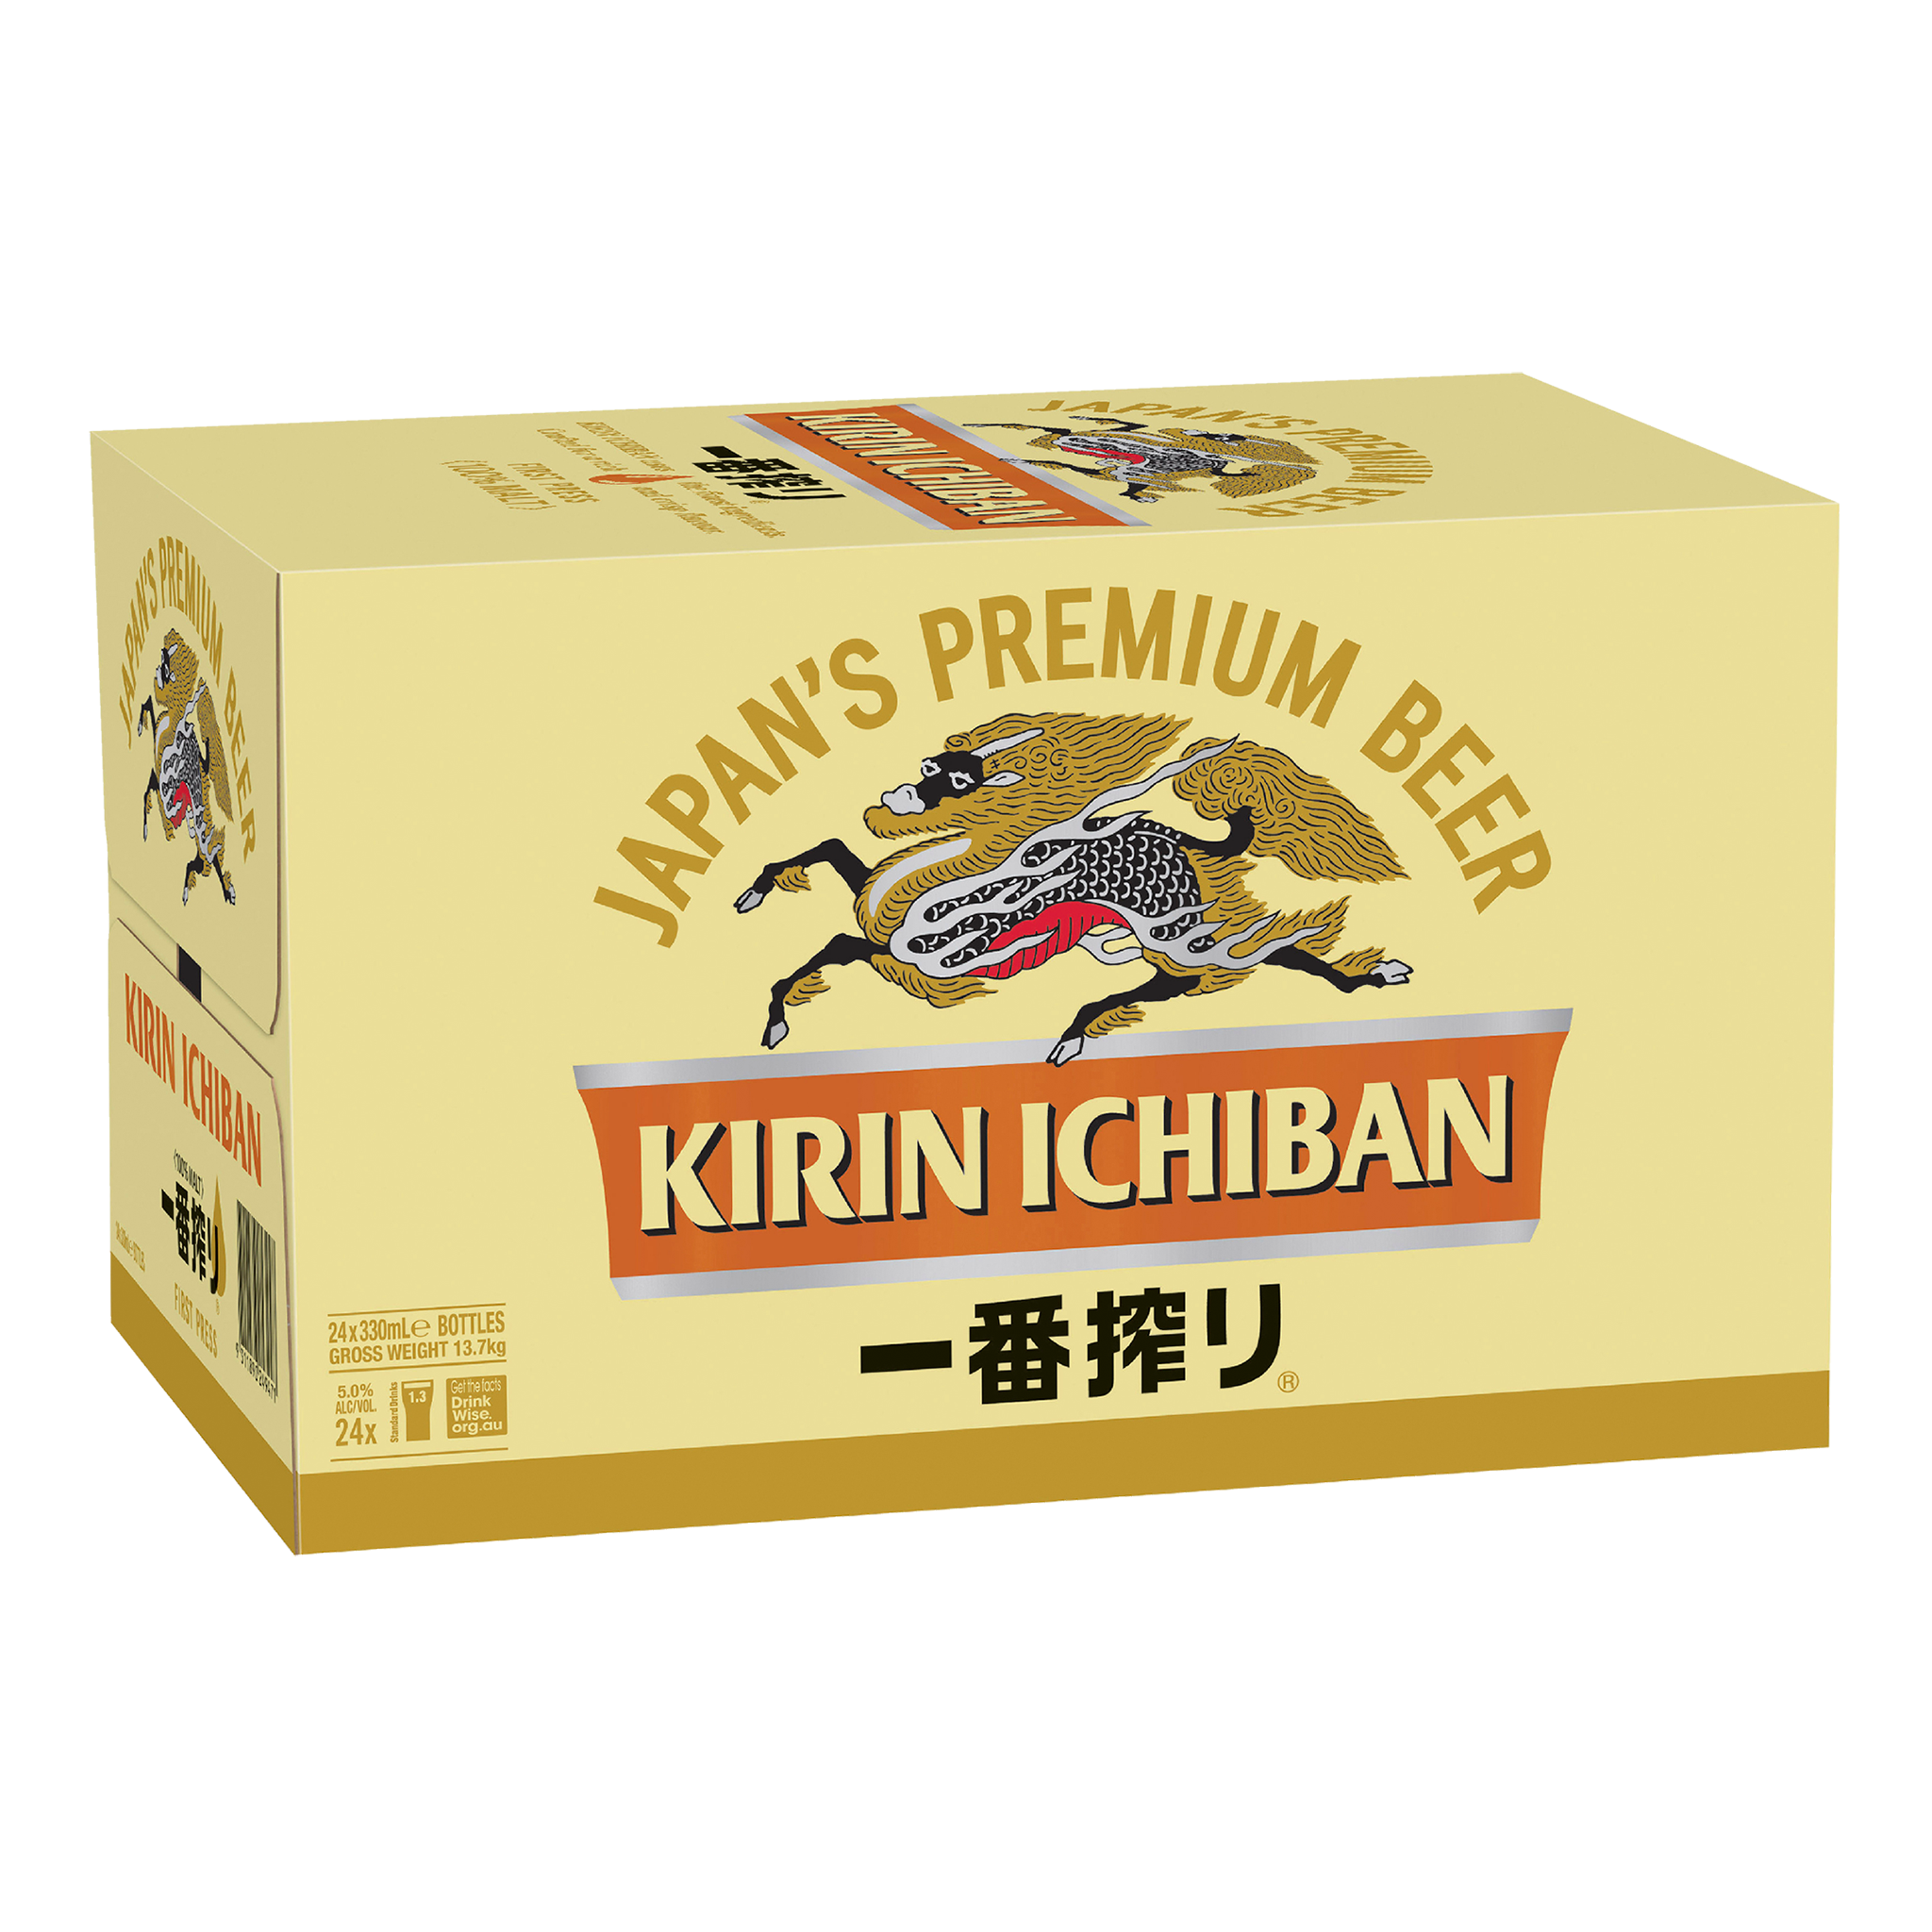 Kirin Ichiban Gold Label (Case)